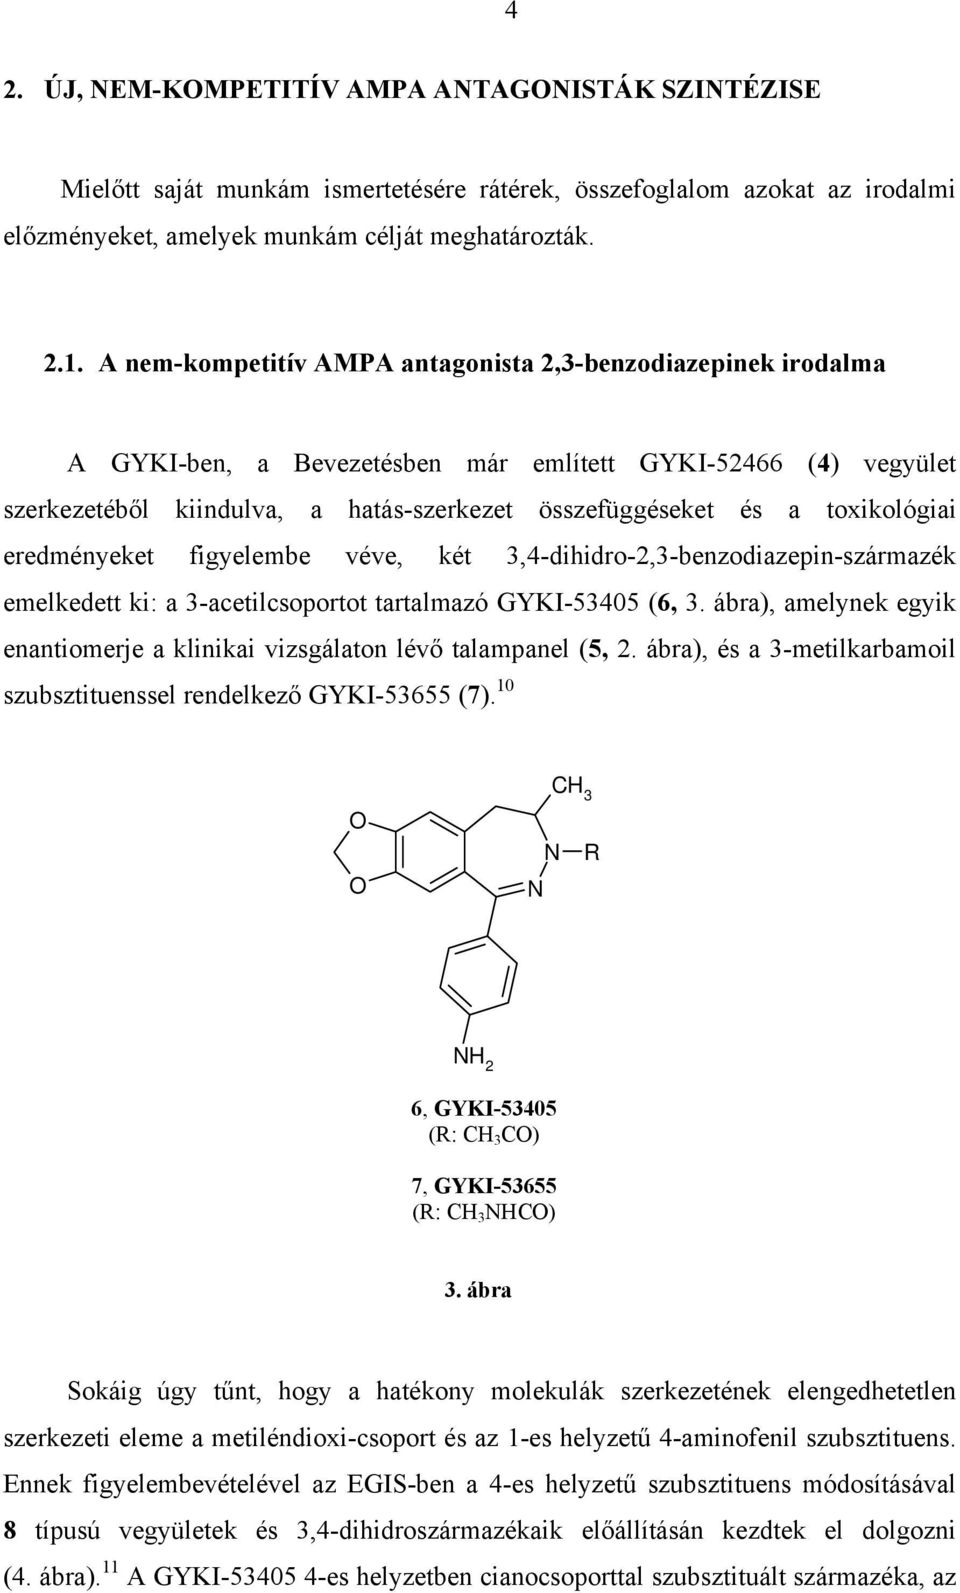 toxikológiai eredményeket figyelembe véve, két 3,4-dihidro-2,3-benzodiazepin-származék emelkedett ki: a 3-acetilcsoportot tartalmazó GYKI-53405 (6, 3.